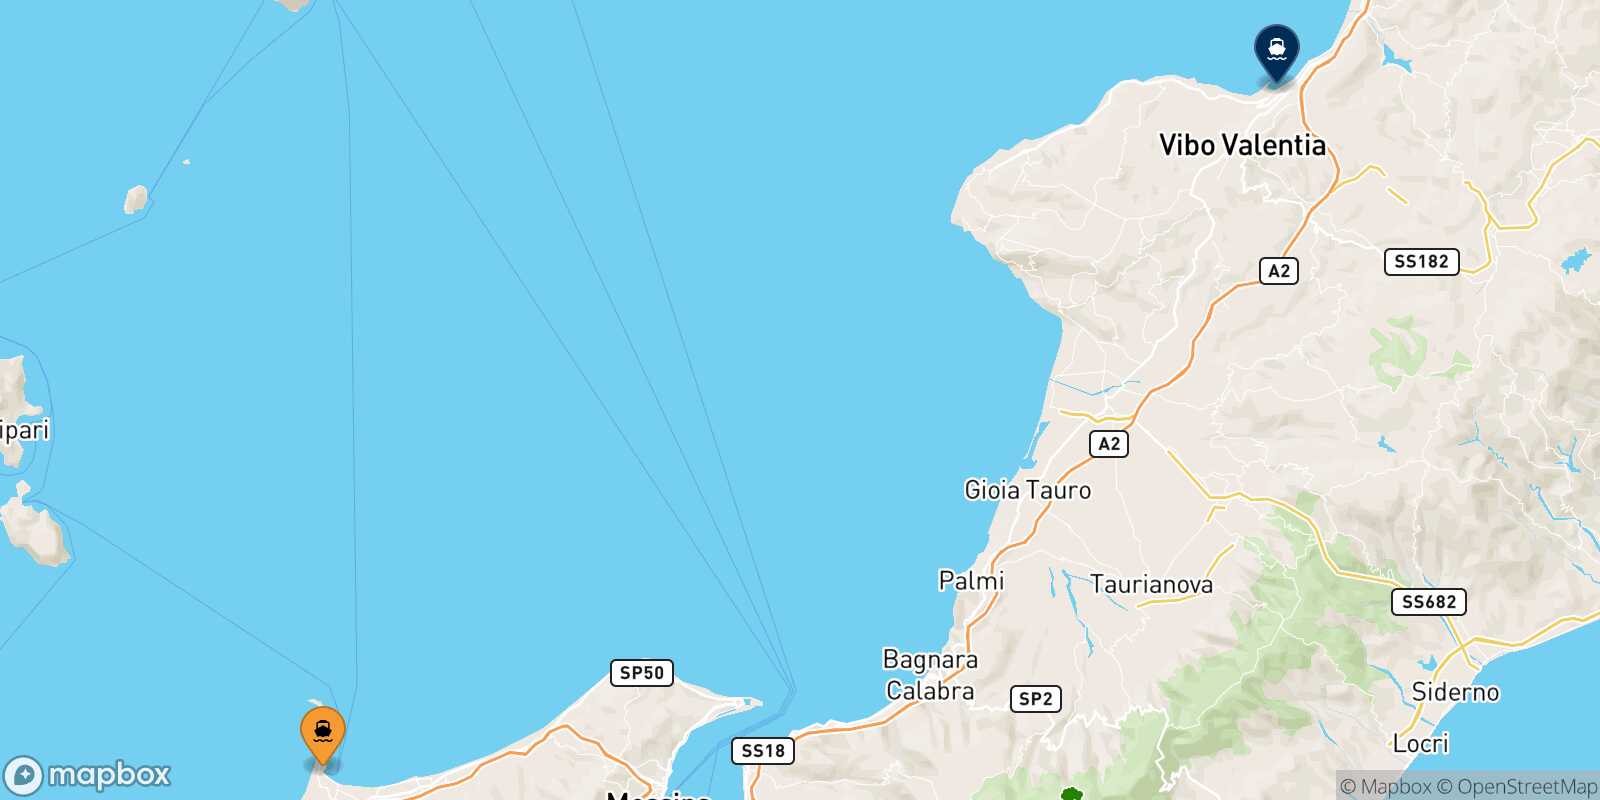 Mappa dei porti collegati con  Vibo Valentia